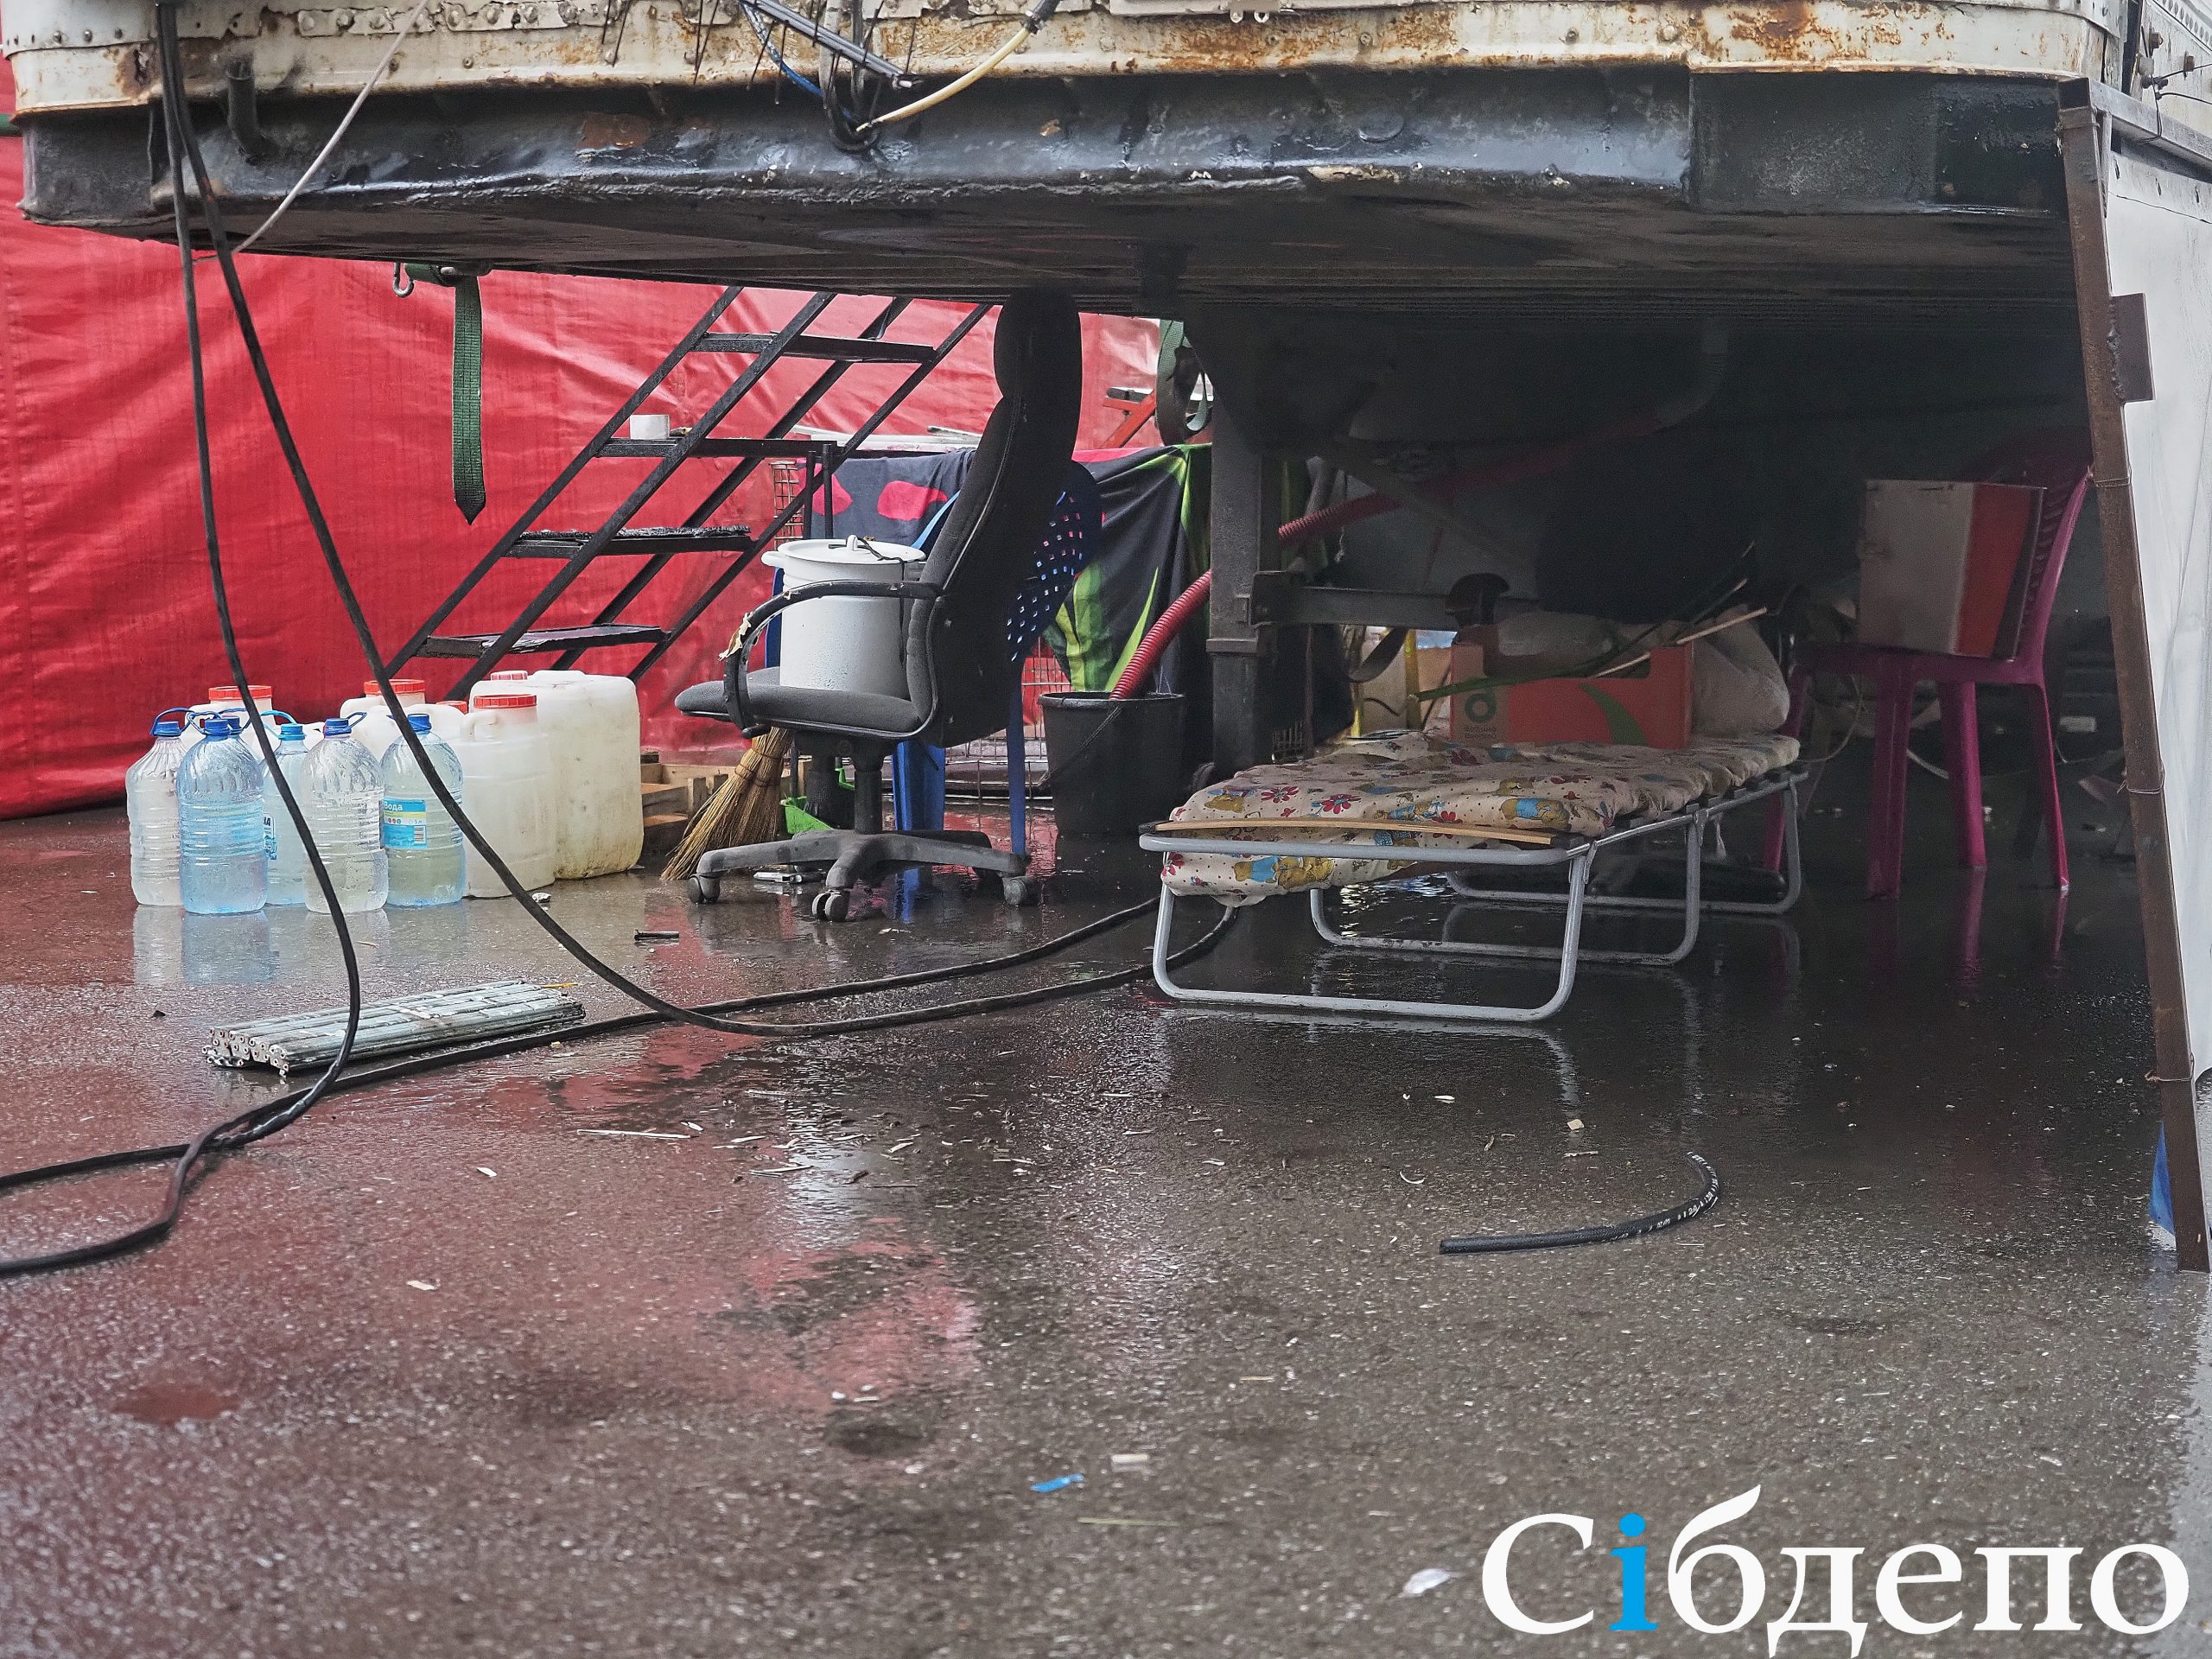 «Затянувшиеся гастроли»: как коронавирус в Кузбассе оставляет людей без работы и денег